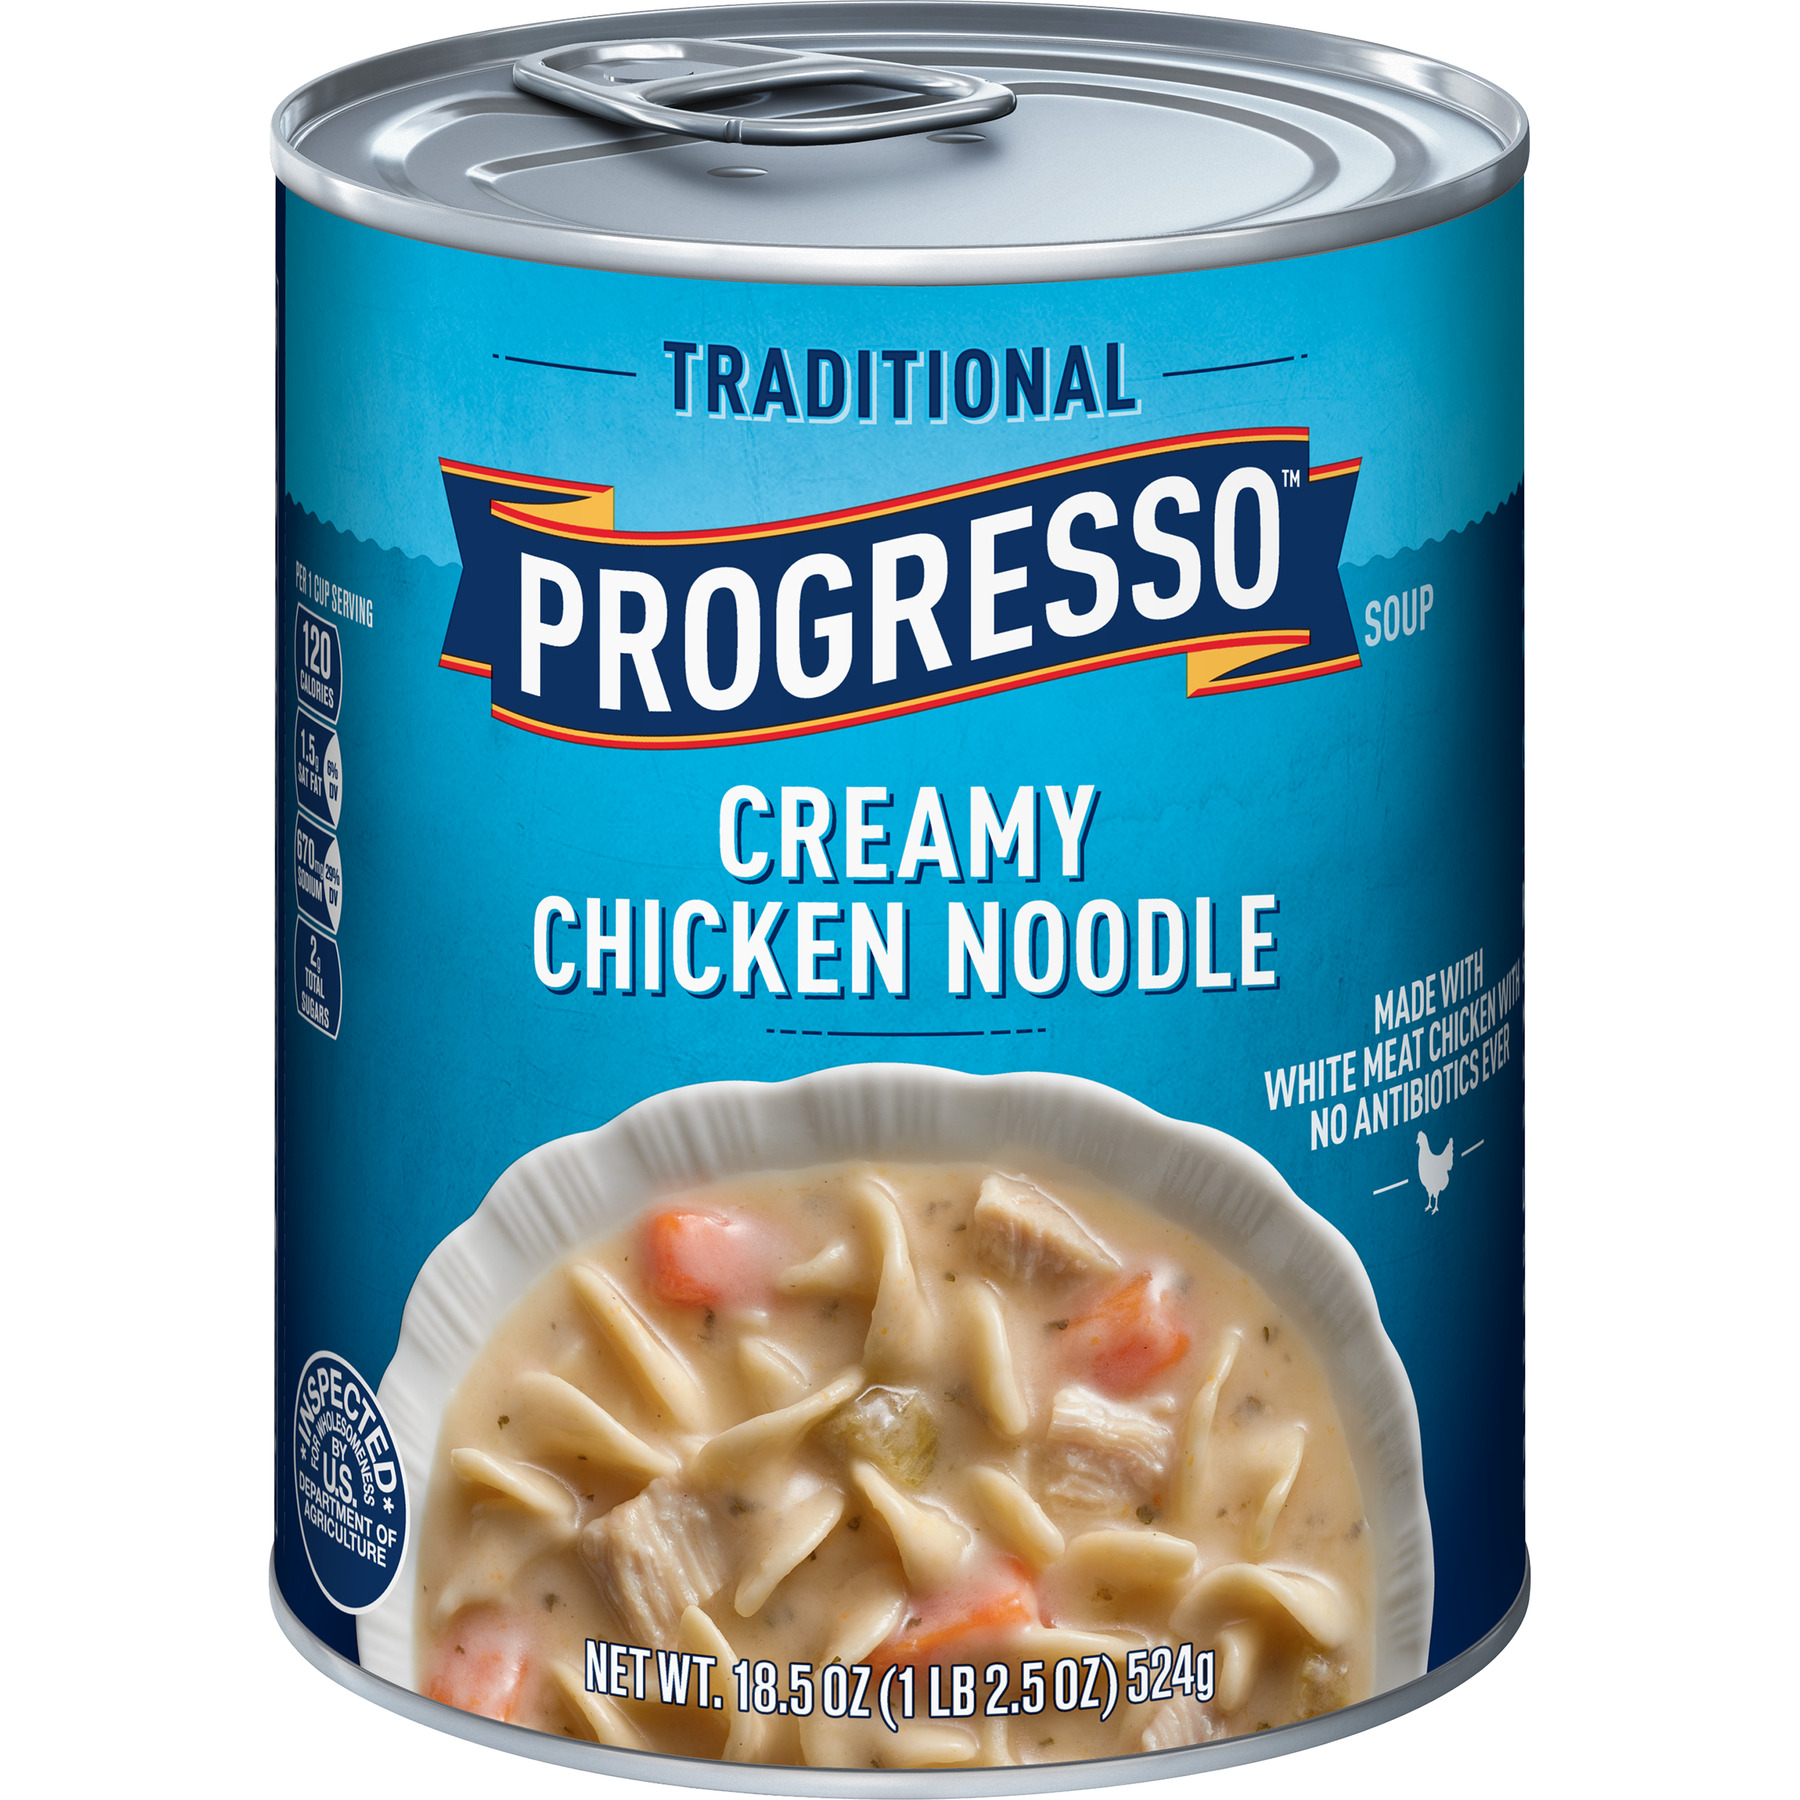 Progresso Creamy Chicken Noodle Soup, 18.5 oz